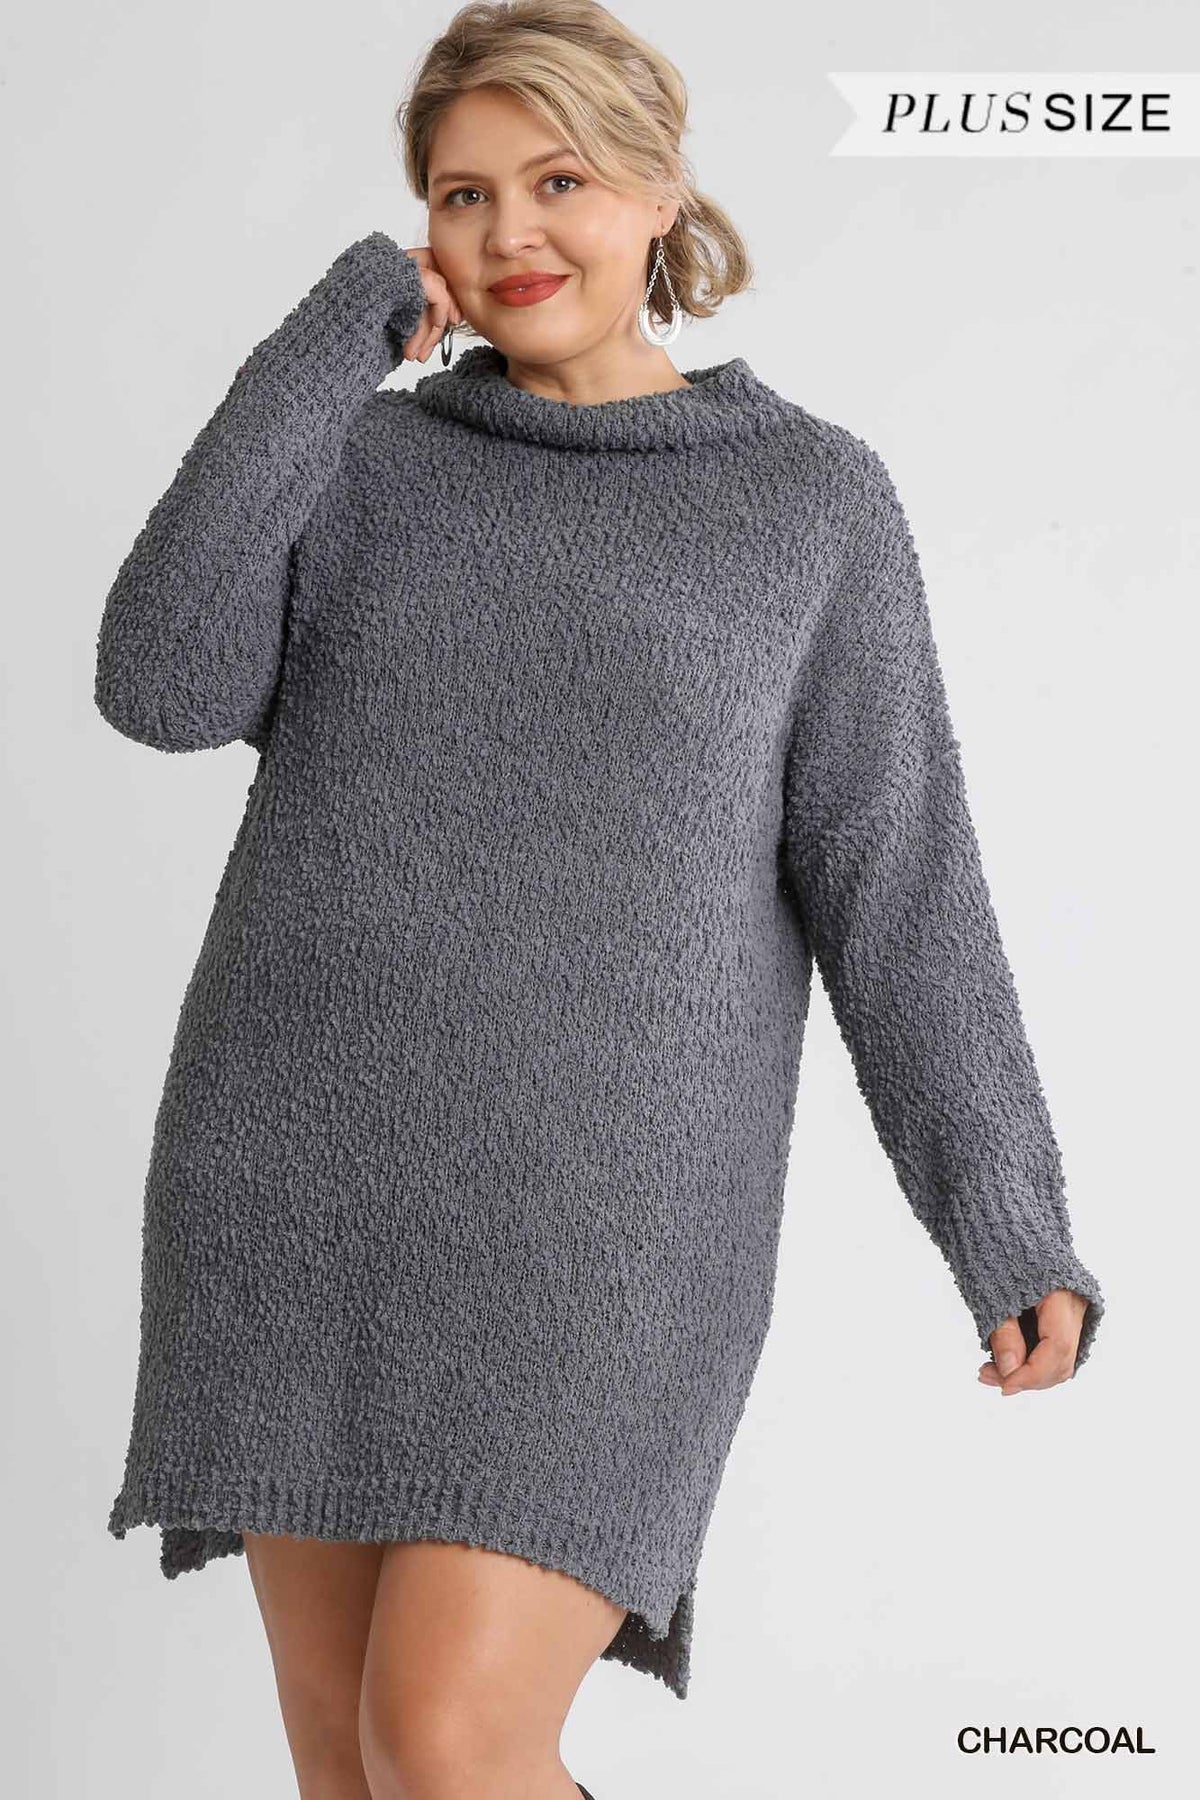 High Cowl Neck Long Sleeve Women's Sweater Dress